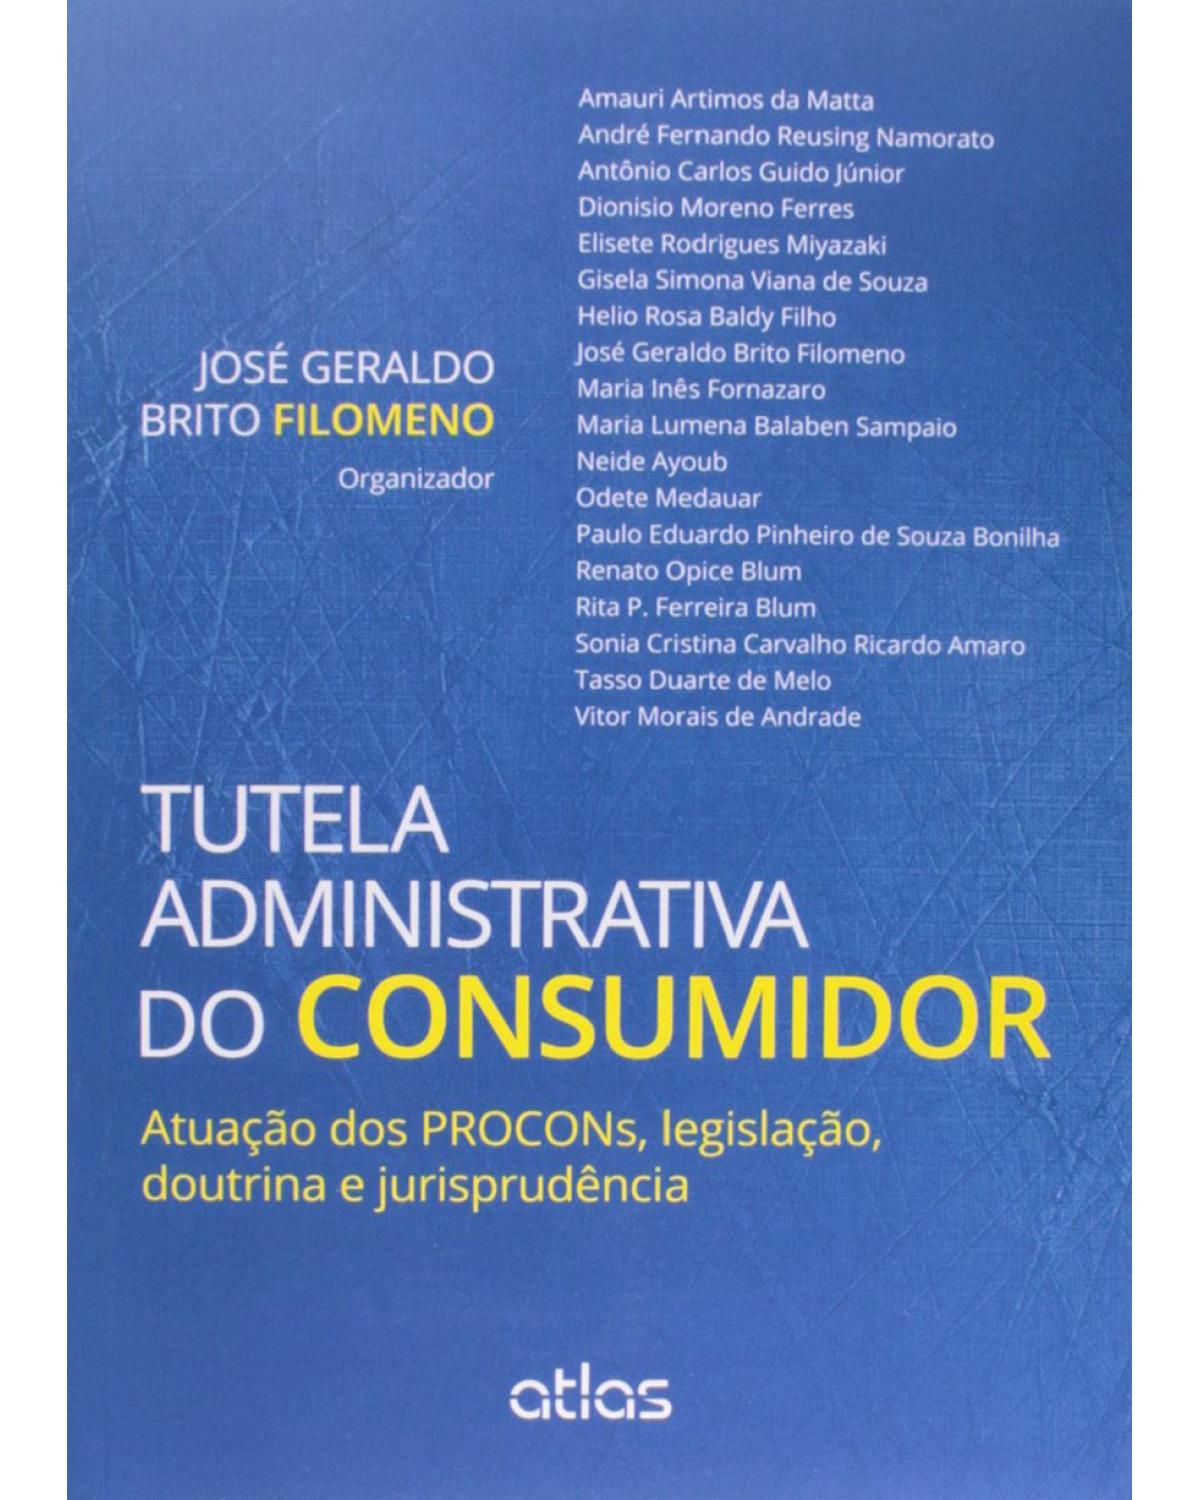 Tutela administrativa do consumidor - Atuação dos PROCONs, legislação, doutrina e jurisprudência - 1ª Edição | 2014